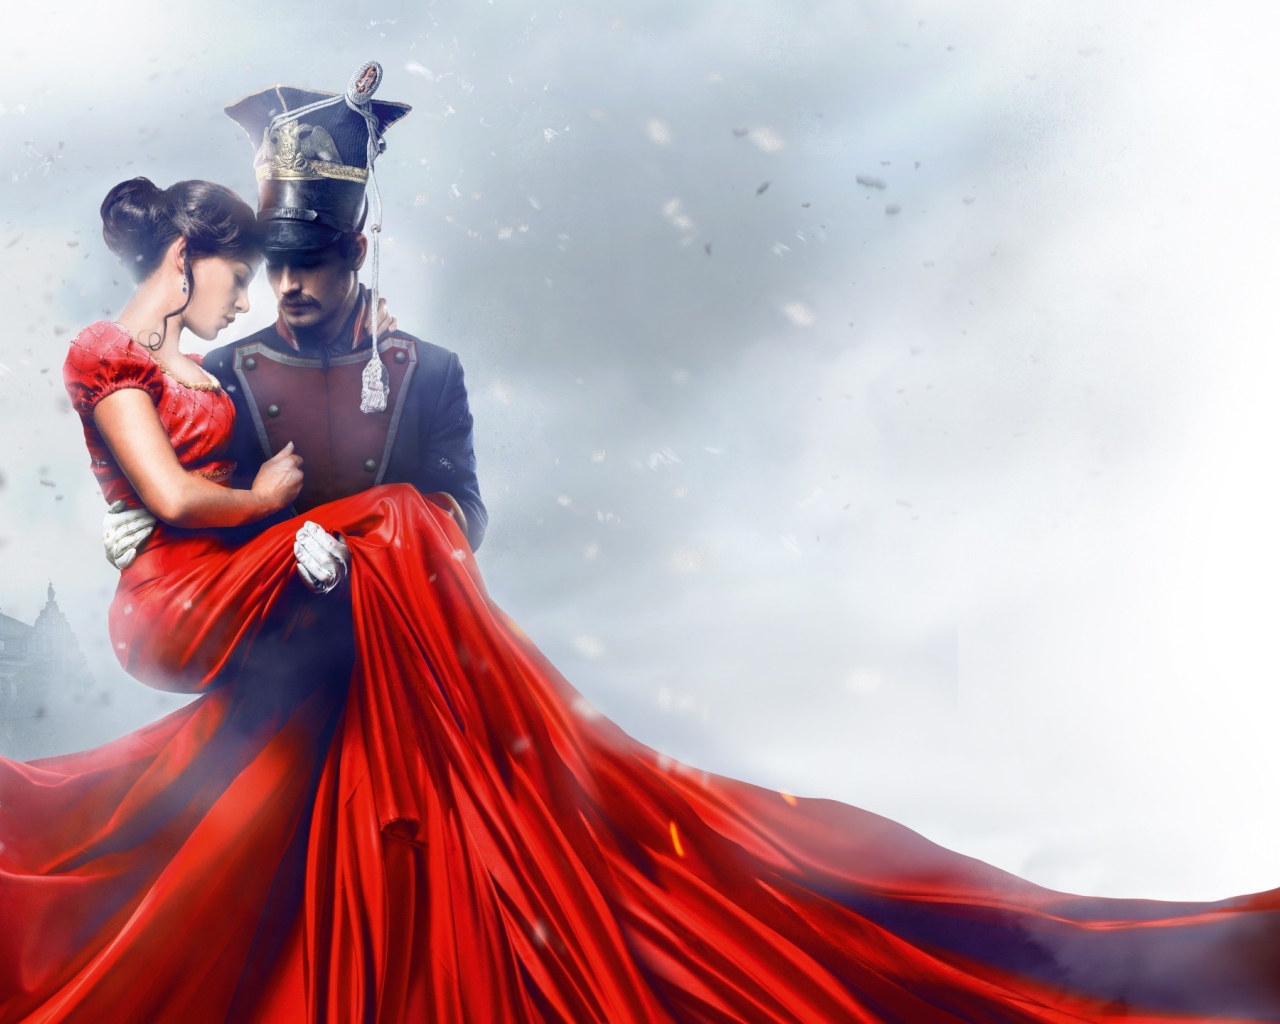 Улан держит на руках девушку в красном платье